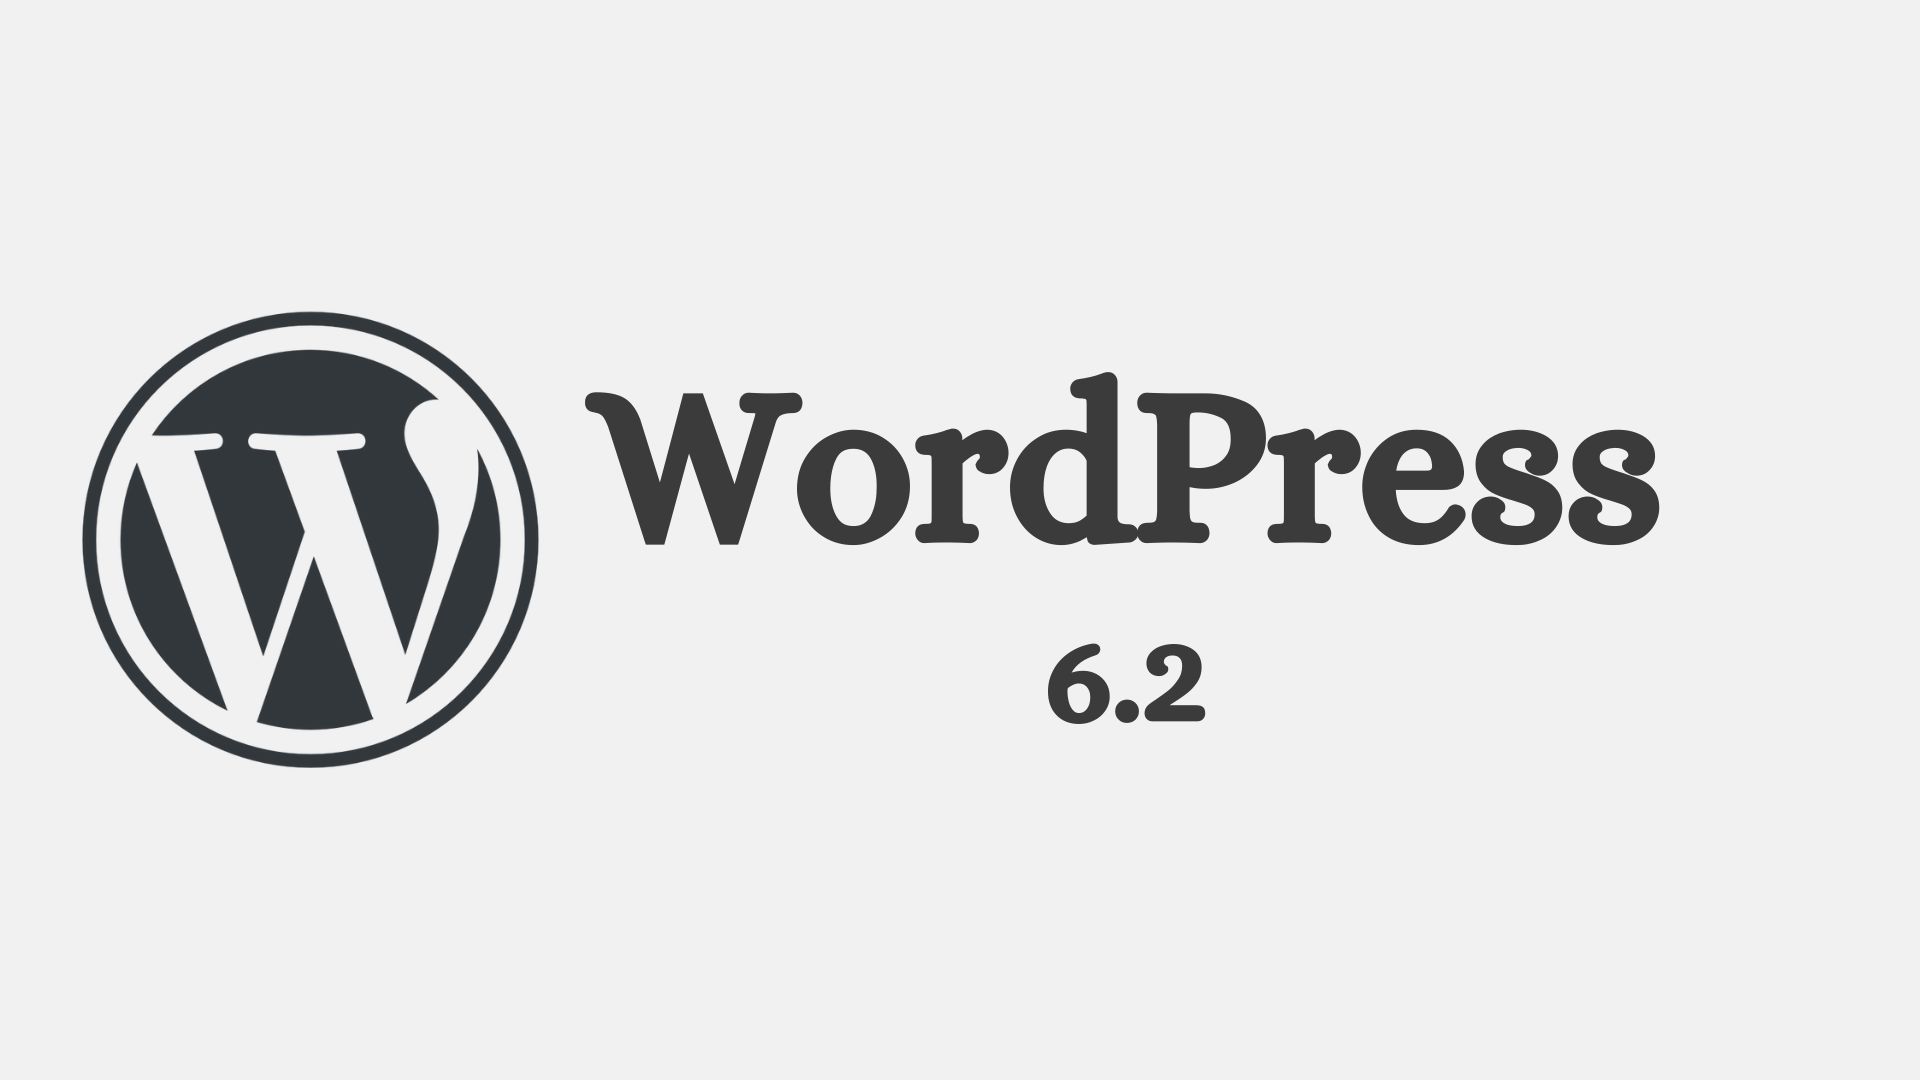 WordPress 6.2 update